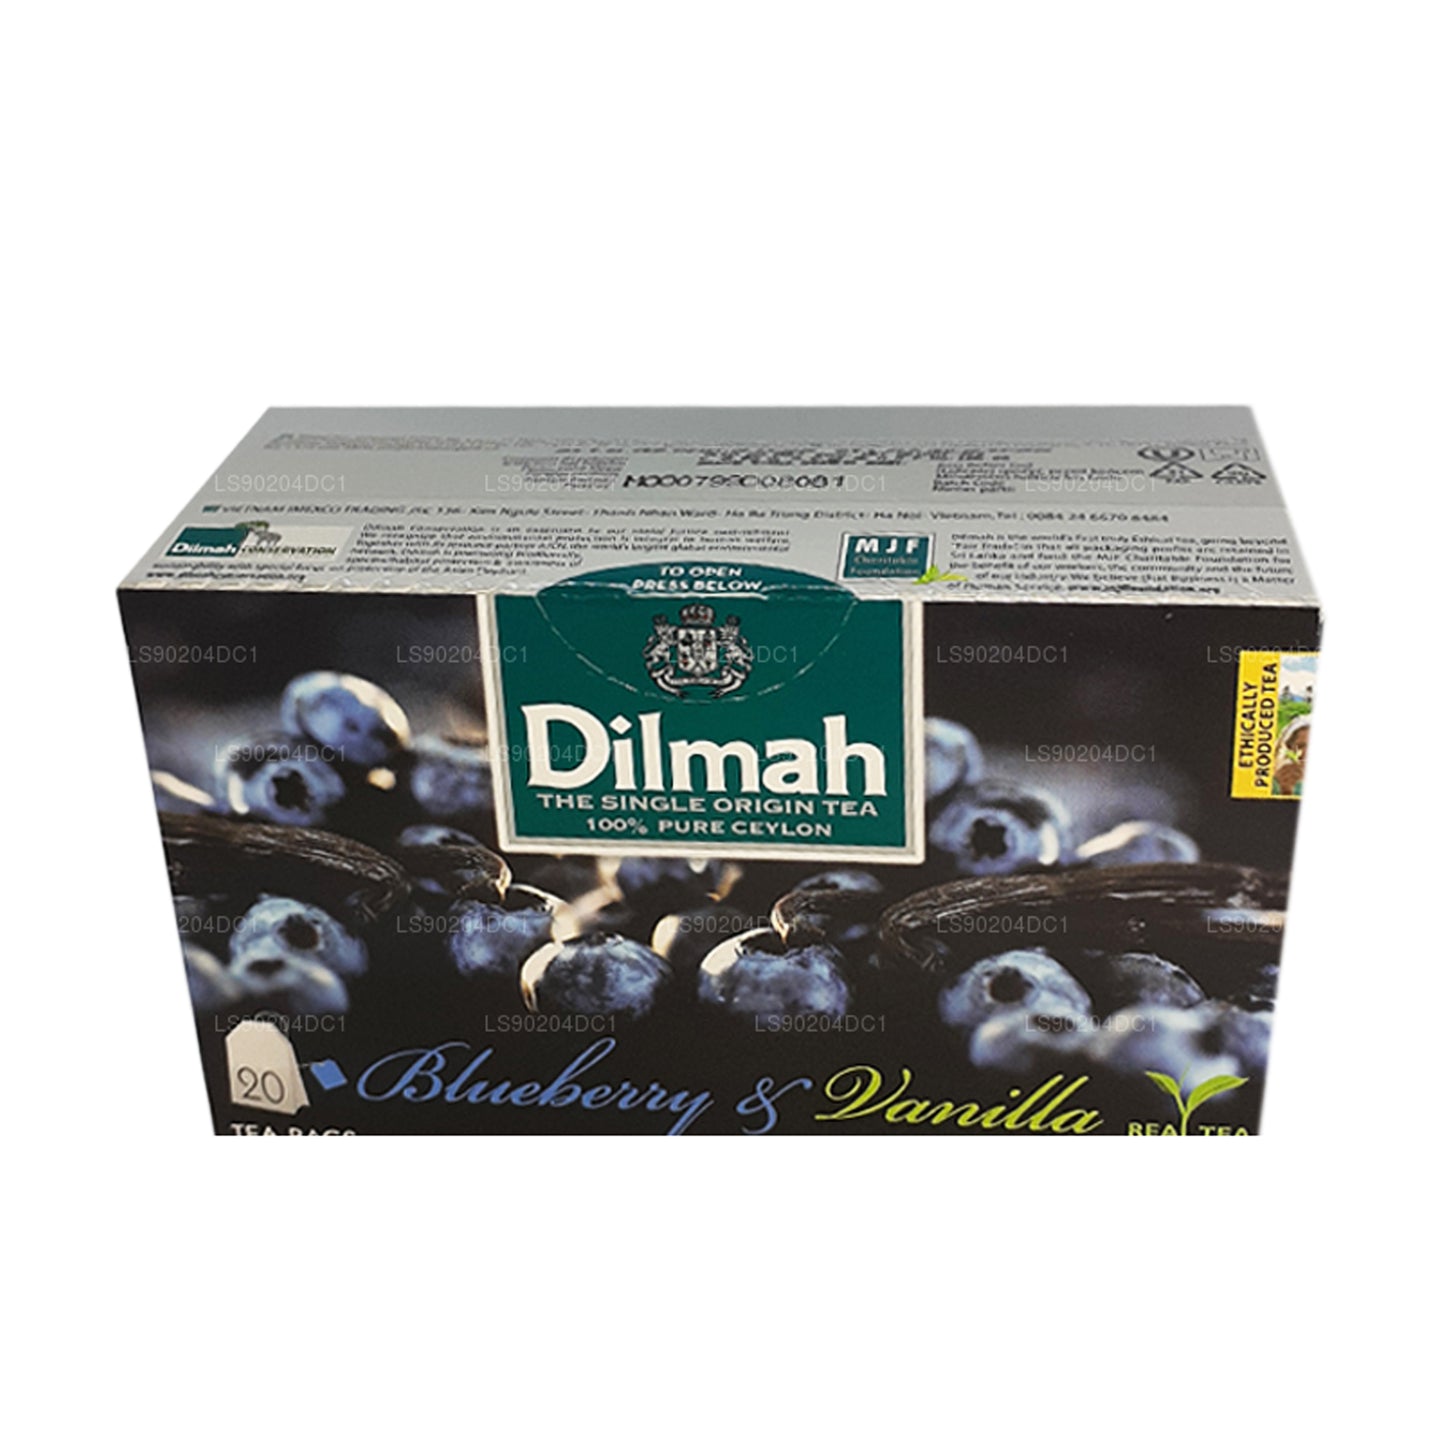 Té Dilmah con sabor a arándanos y vainilla (40 g) 20 bolsitas de té